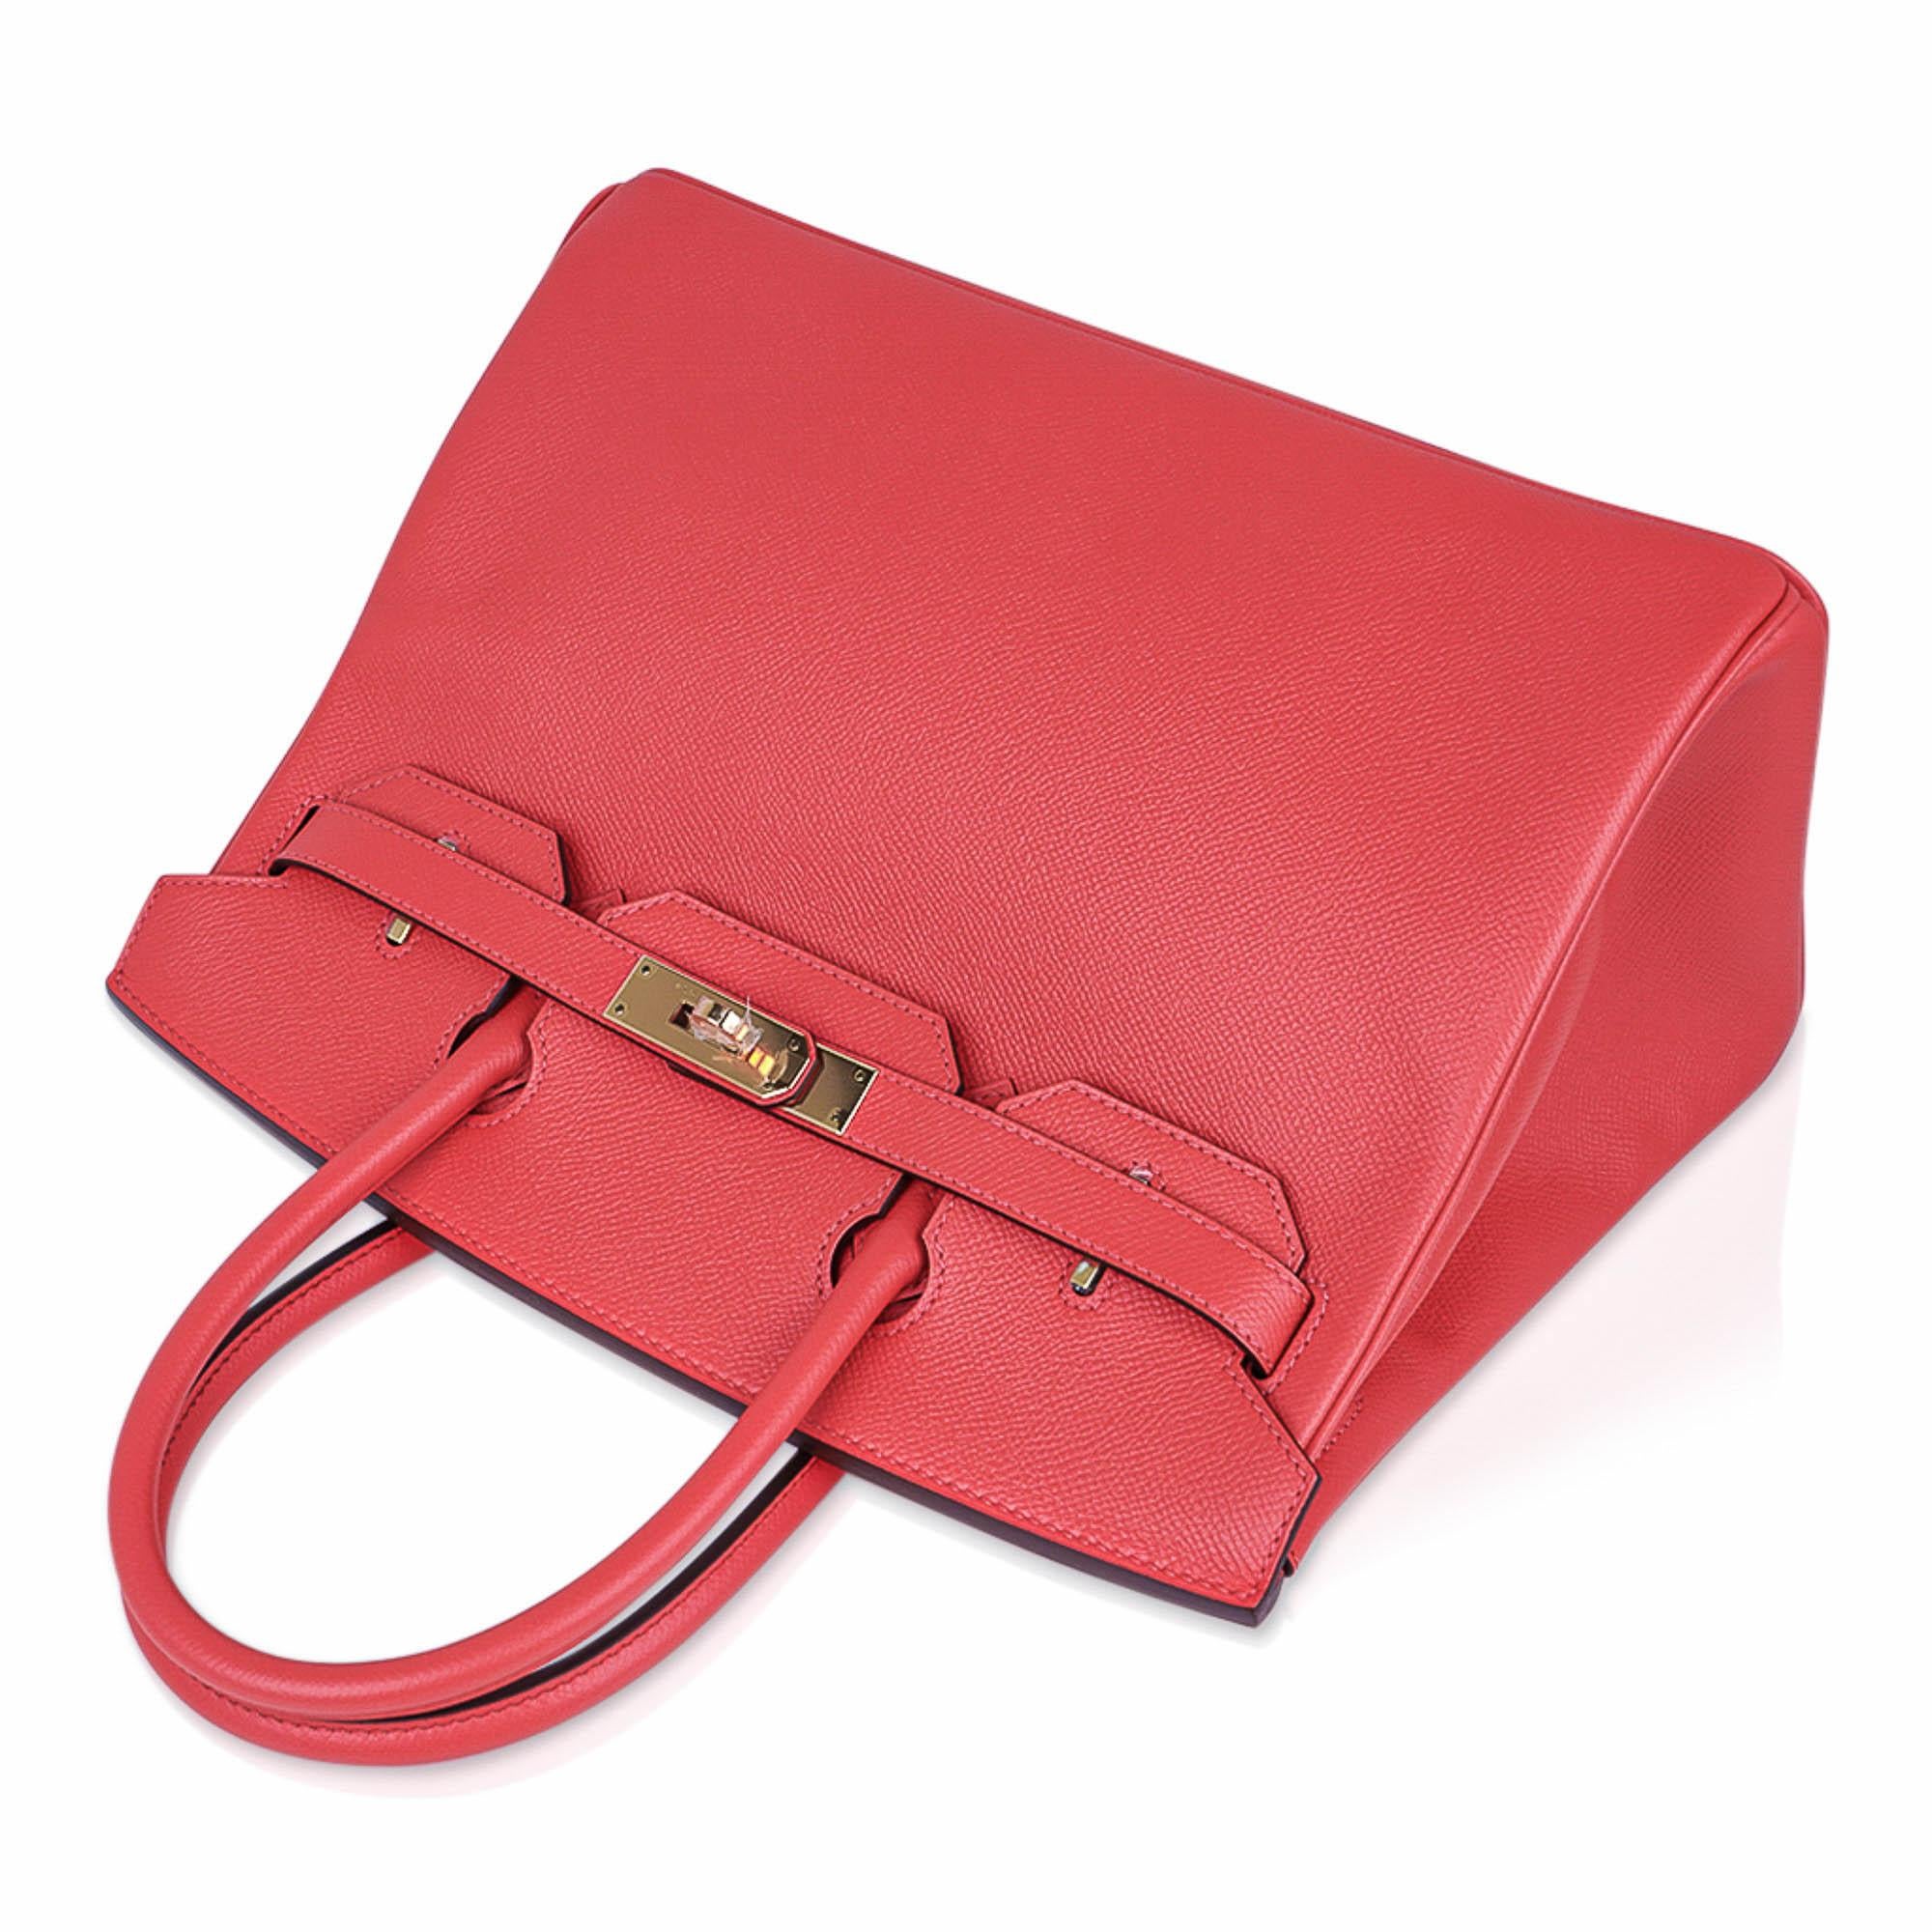 Red Hermes Birkin 30 Rose Jaipur Bag Epsom Leather Gold Hardware For Sale